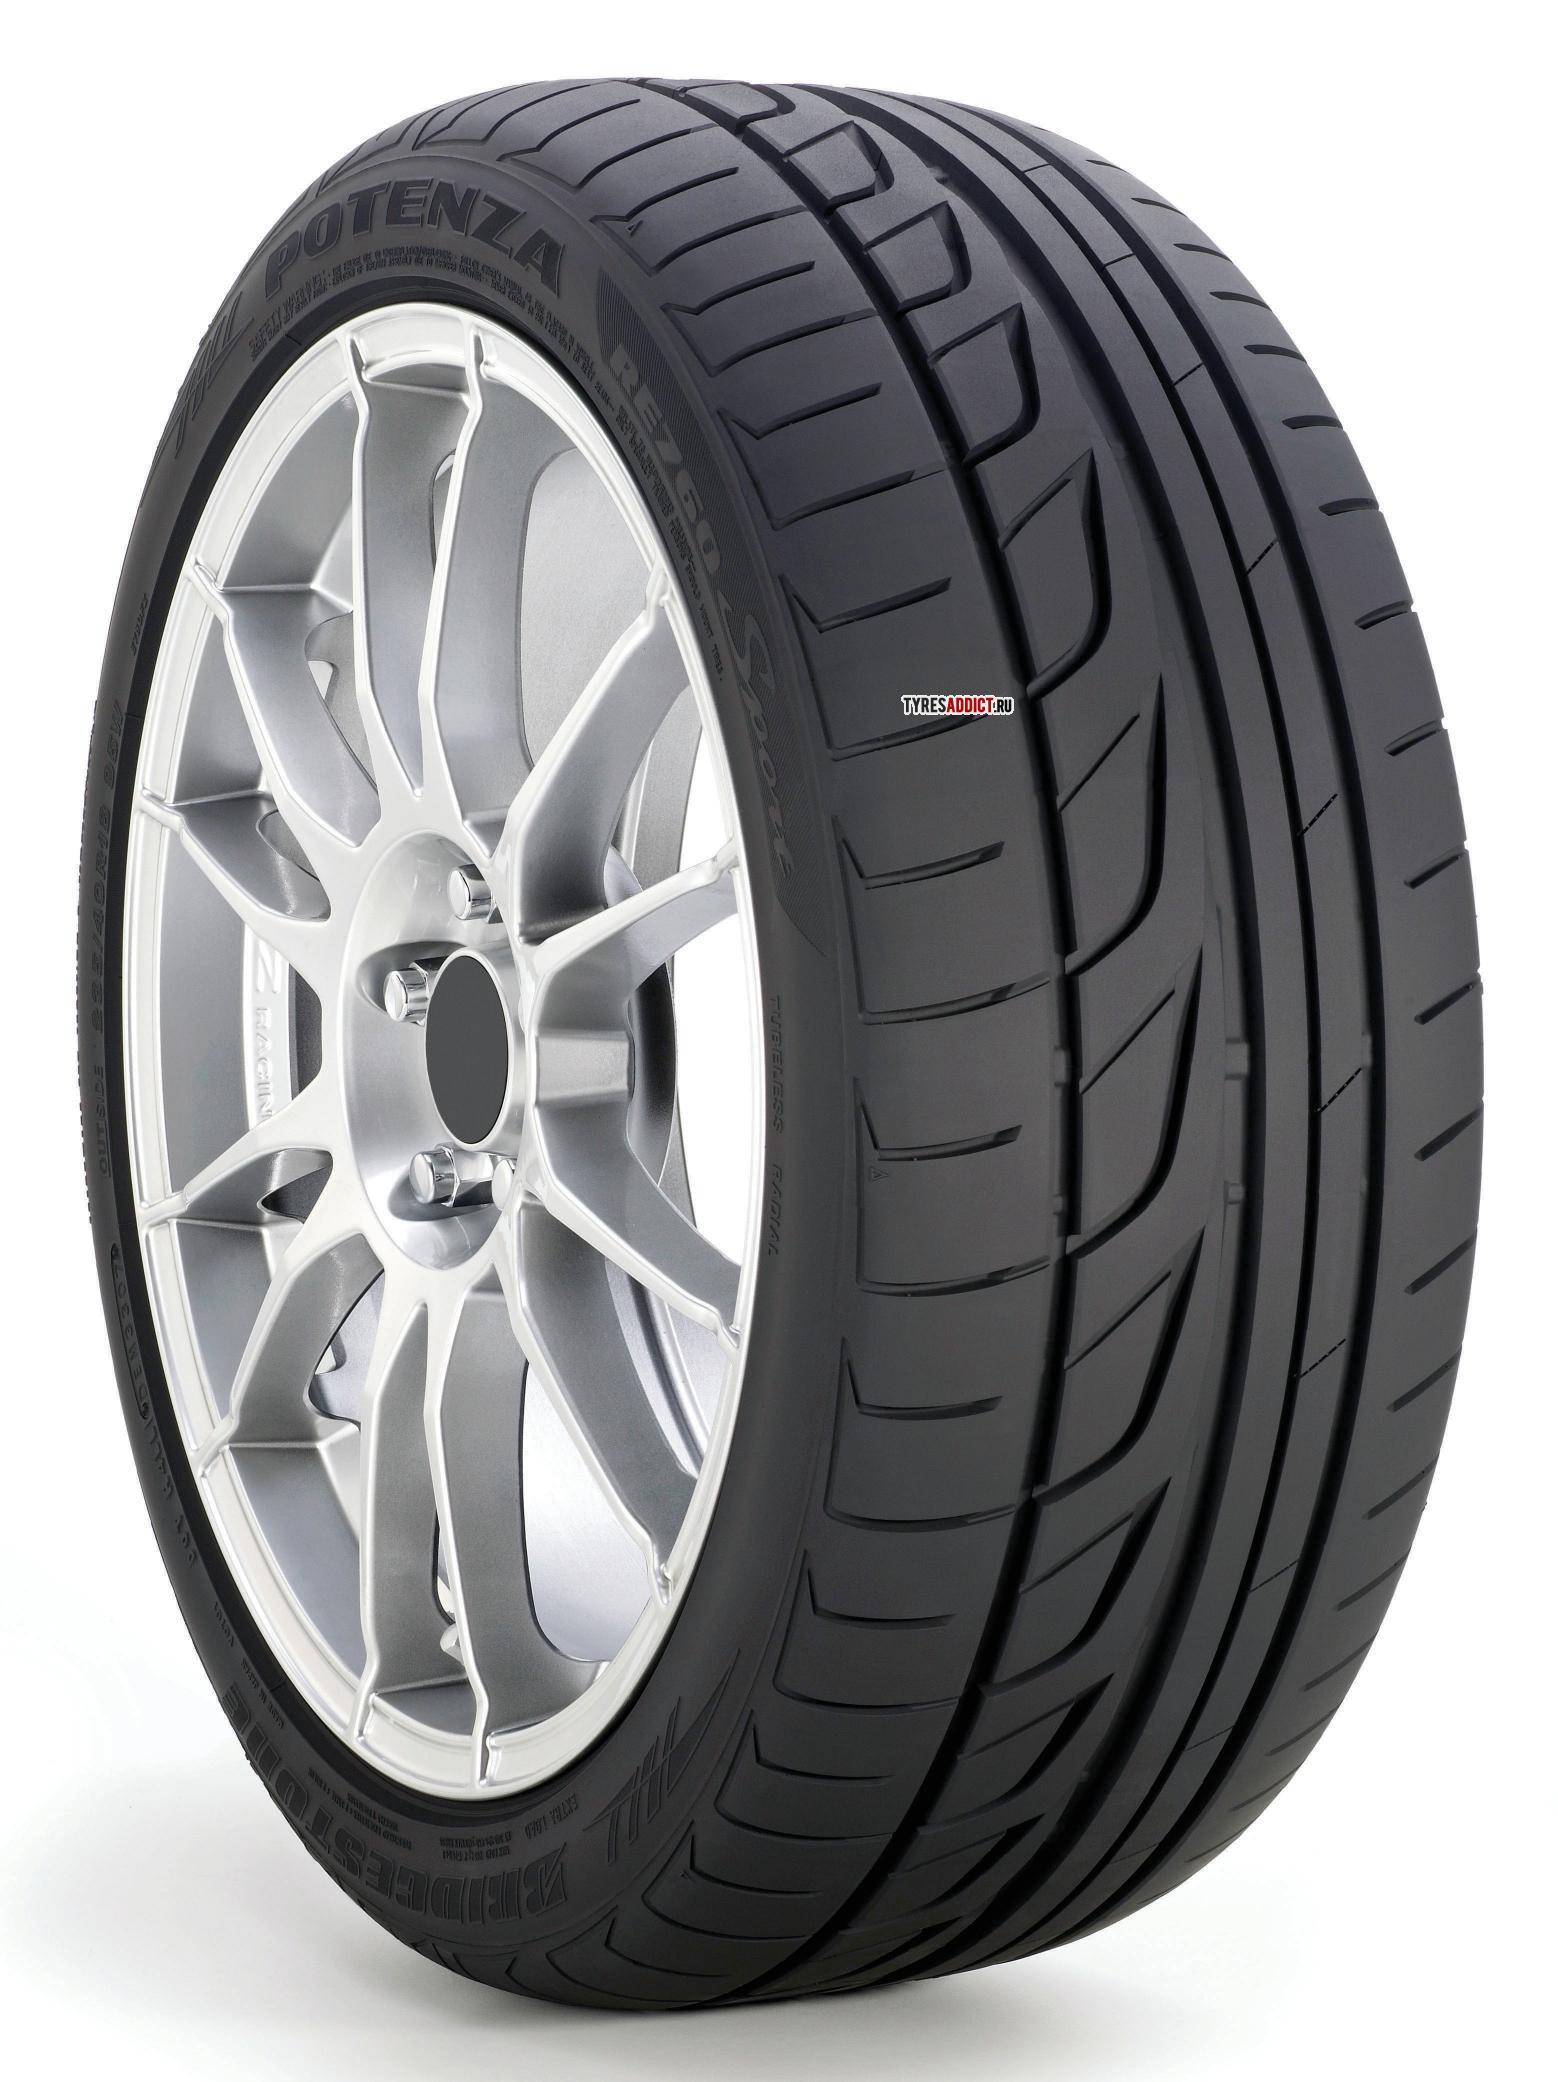 bridgestone-potenza-re760-sport-tires-reviews-and-prices-tyresaddict